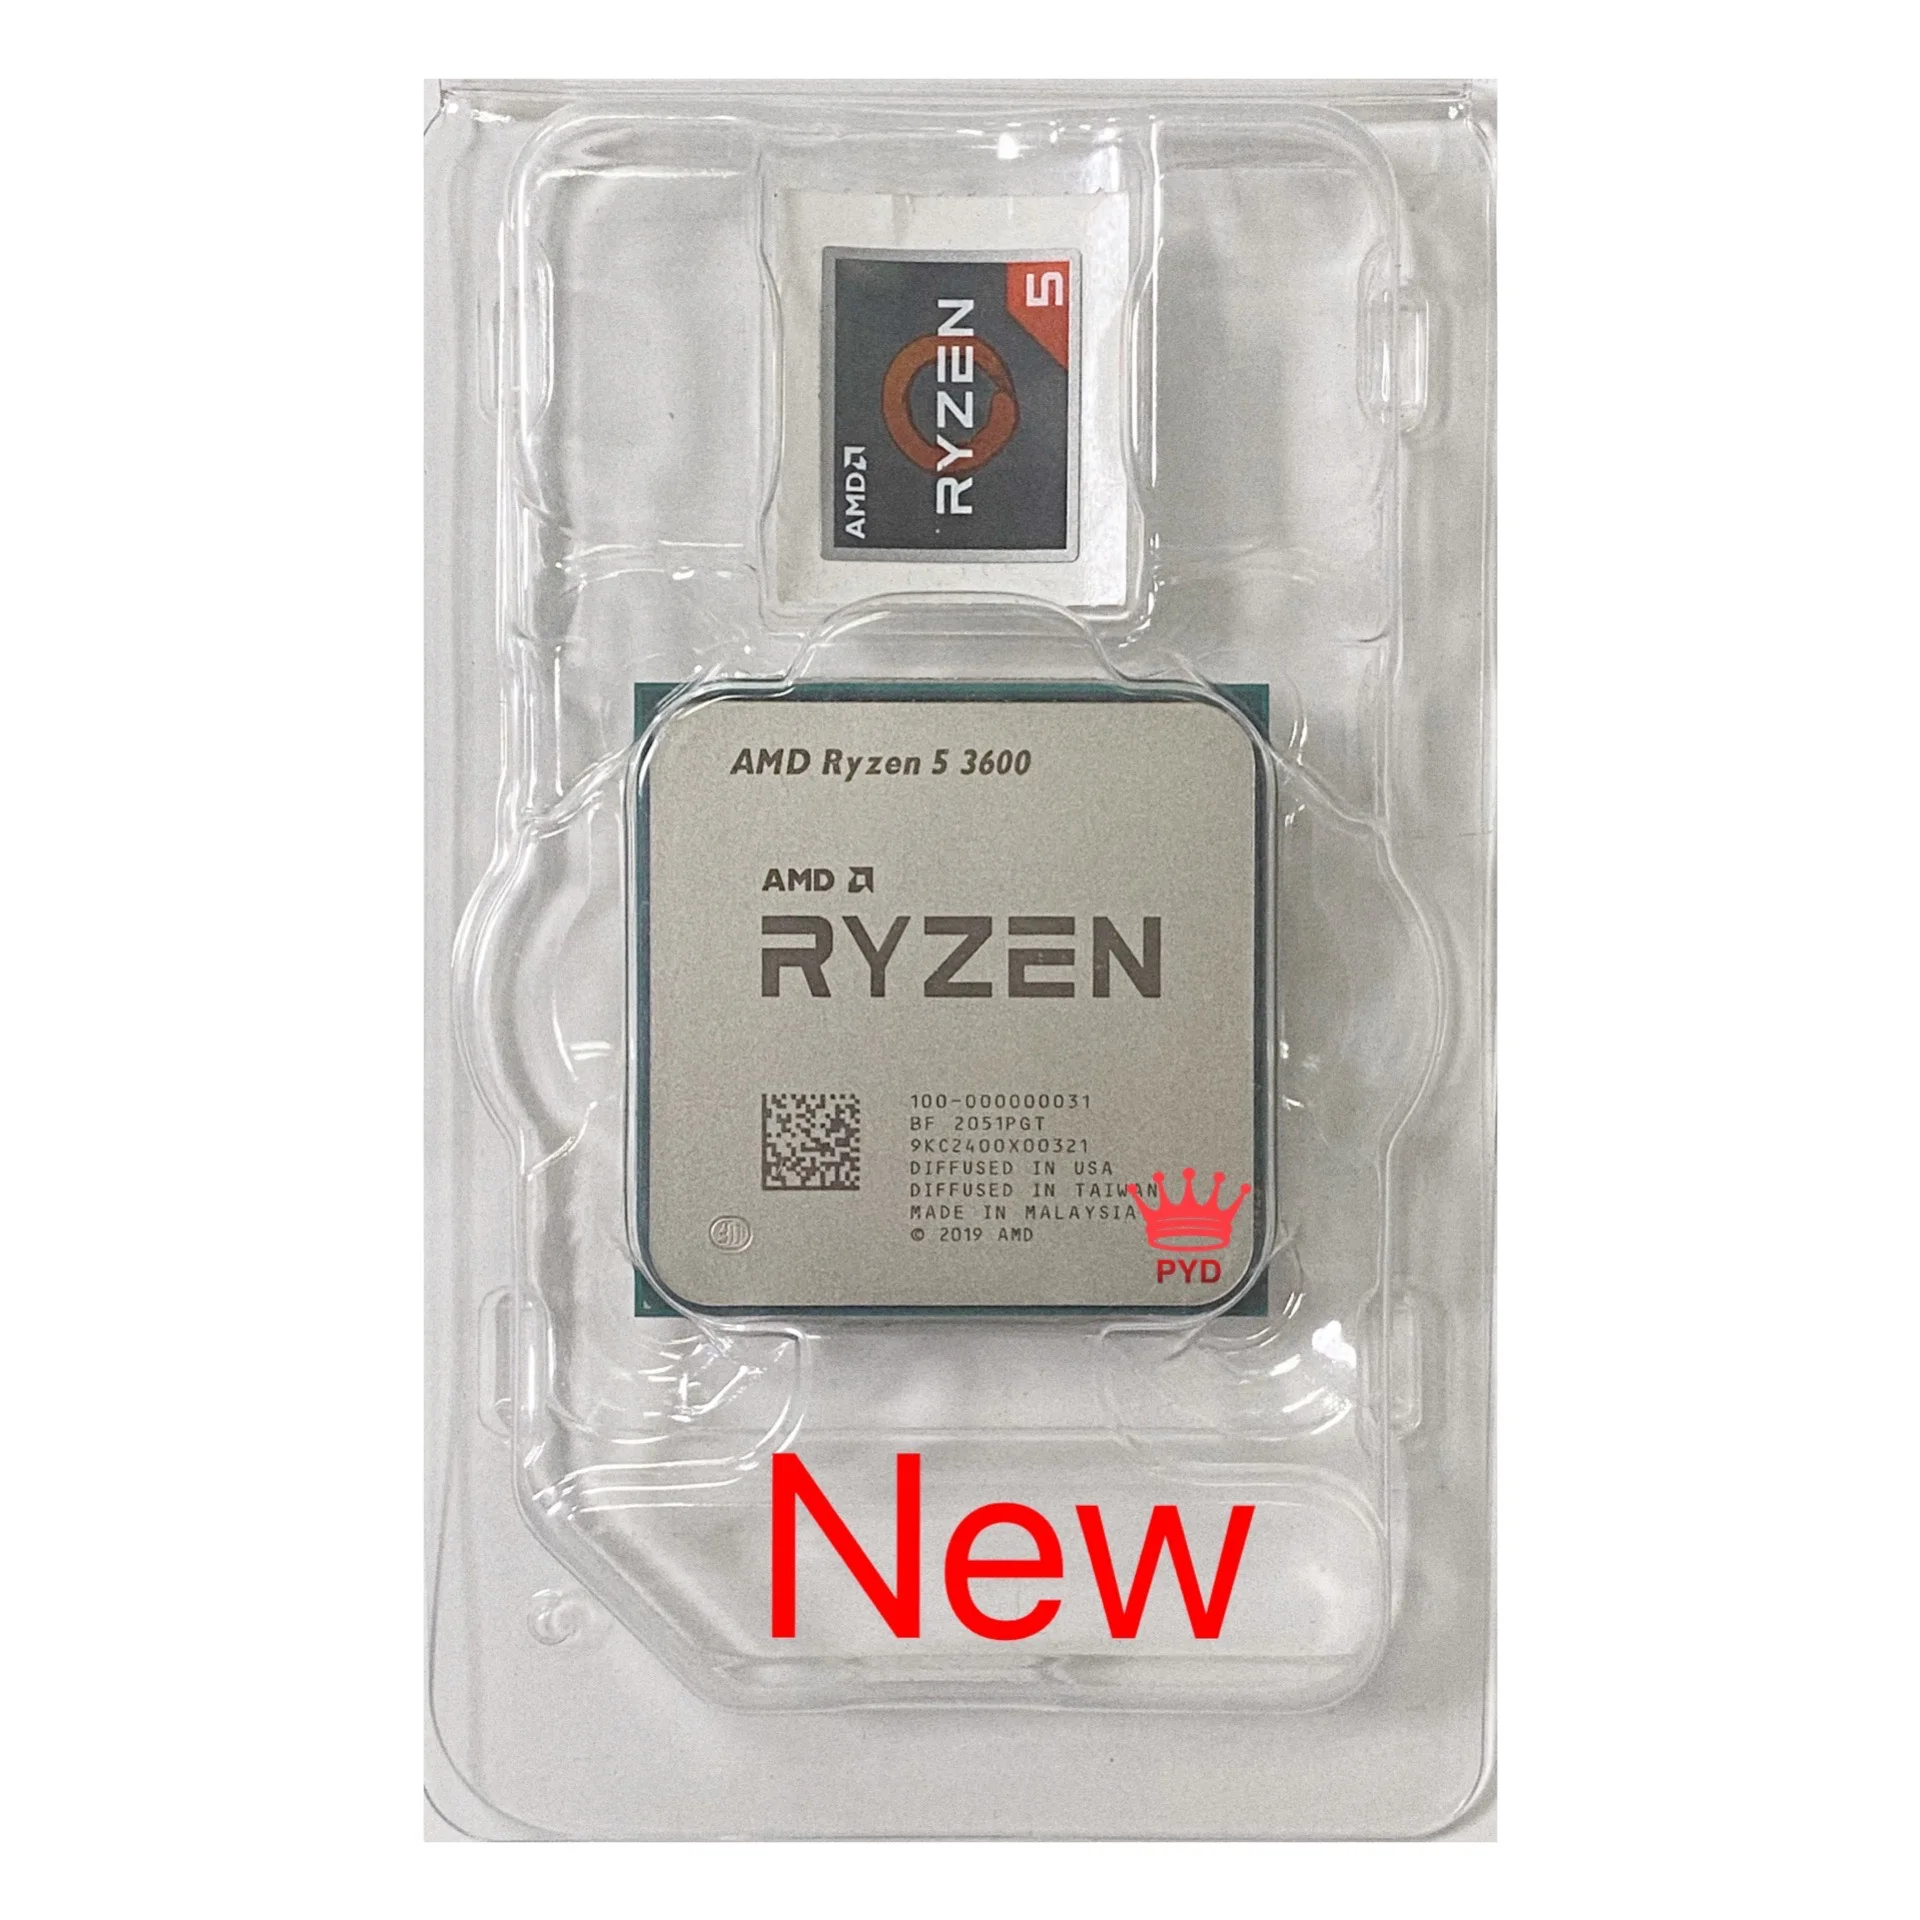 Процессор AMD Ryzen 5 3600 New R5 3600 3,6 ГГц шестиядерный двенадцатипоточный процессор 7 нм 65 Вт L3 = 32M 100 000000031 разъем AM4 новый без вентилятора